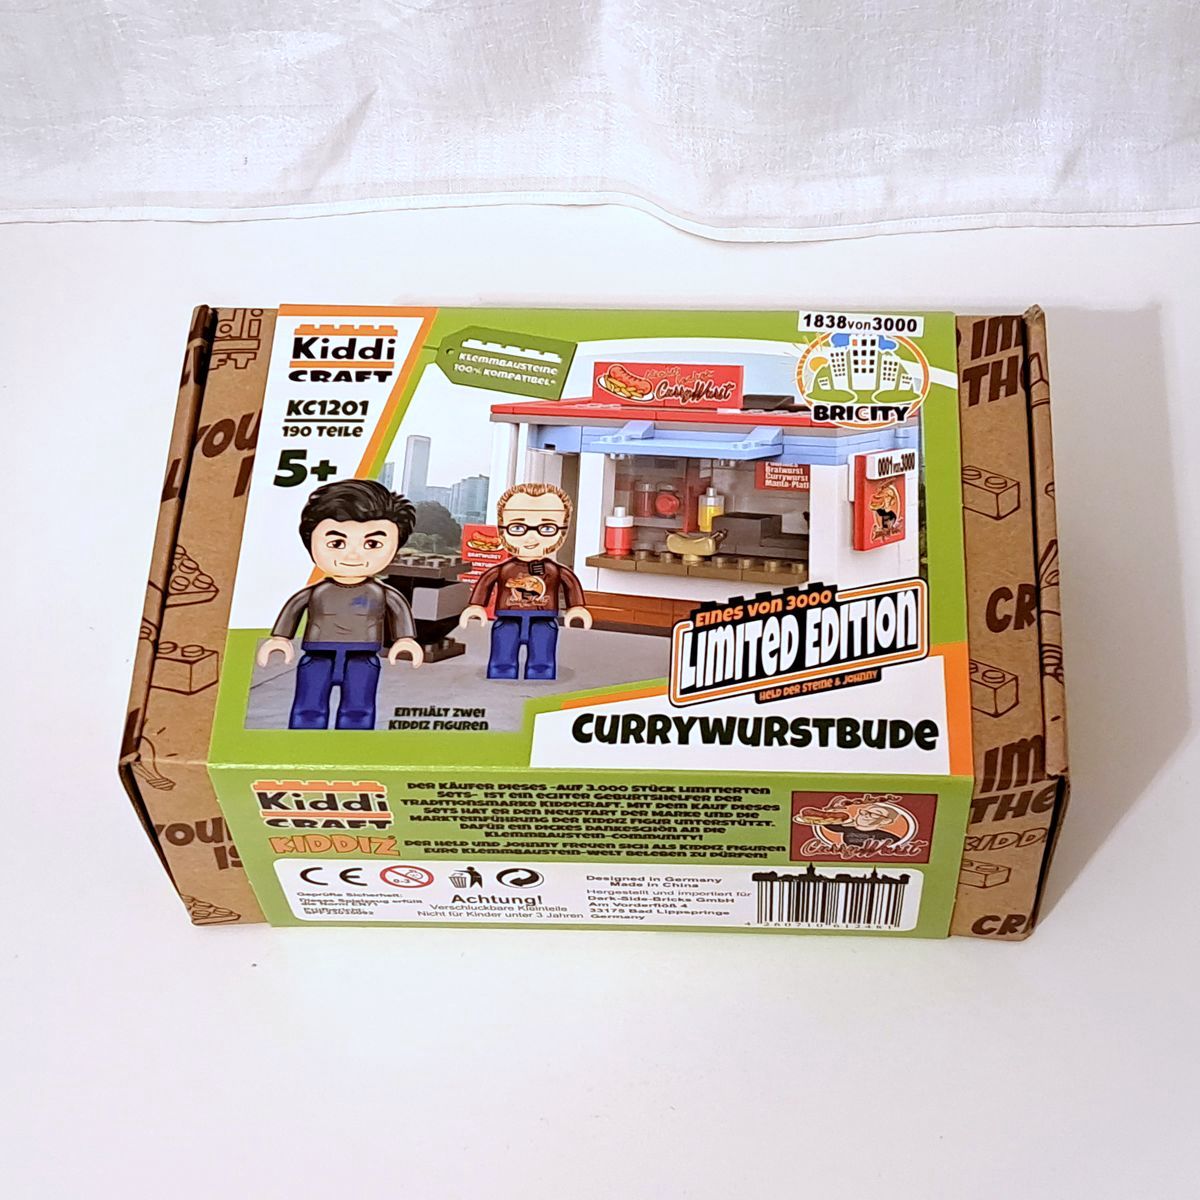 [KC1301] Currywurstbude Limited Edition: 1838 von 3000 #Kiddicraft #Crowdfunding — 16. Februar 2024